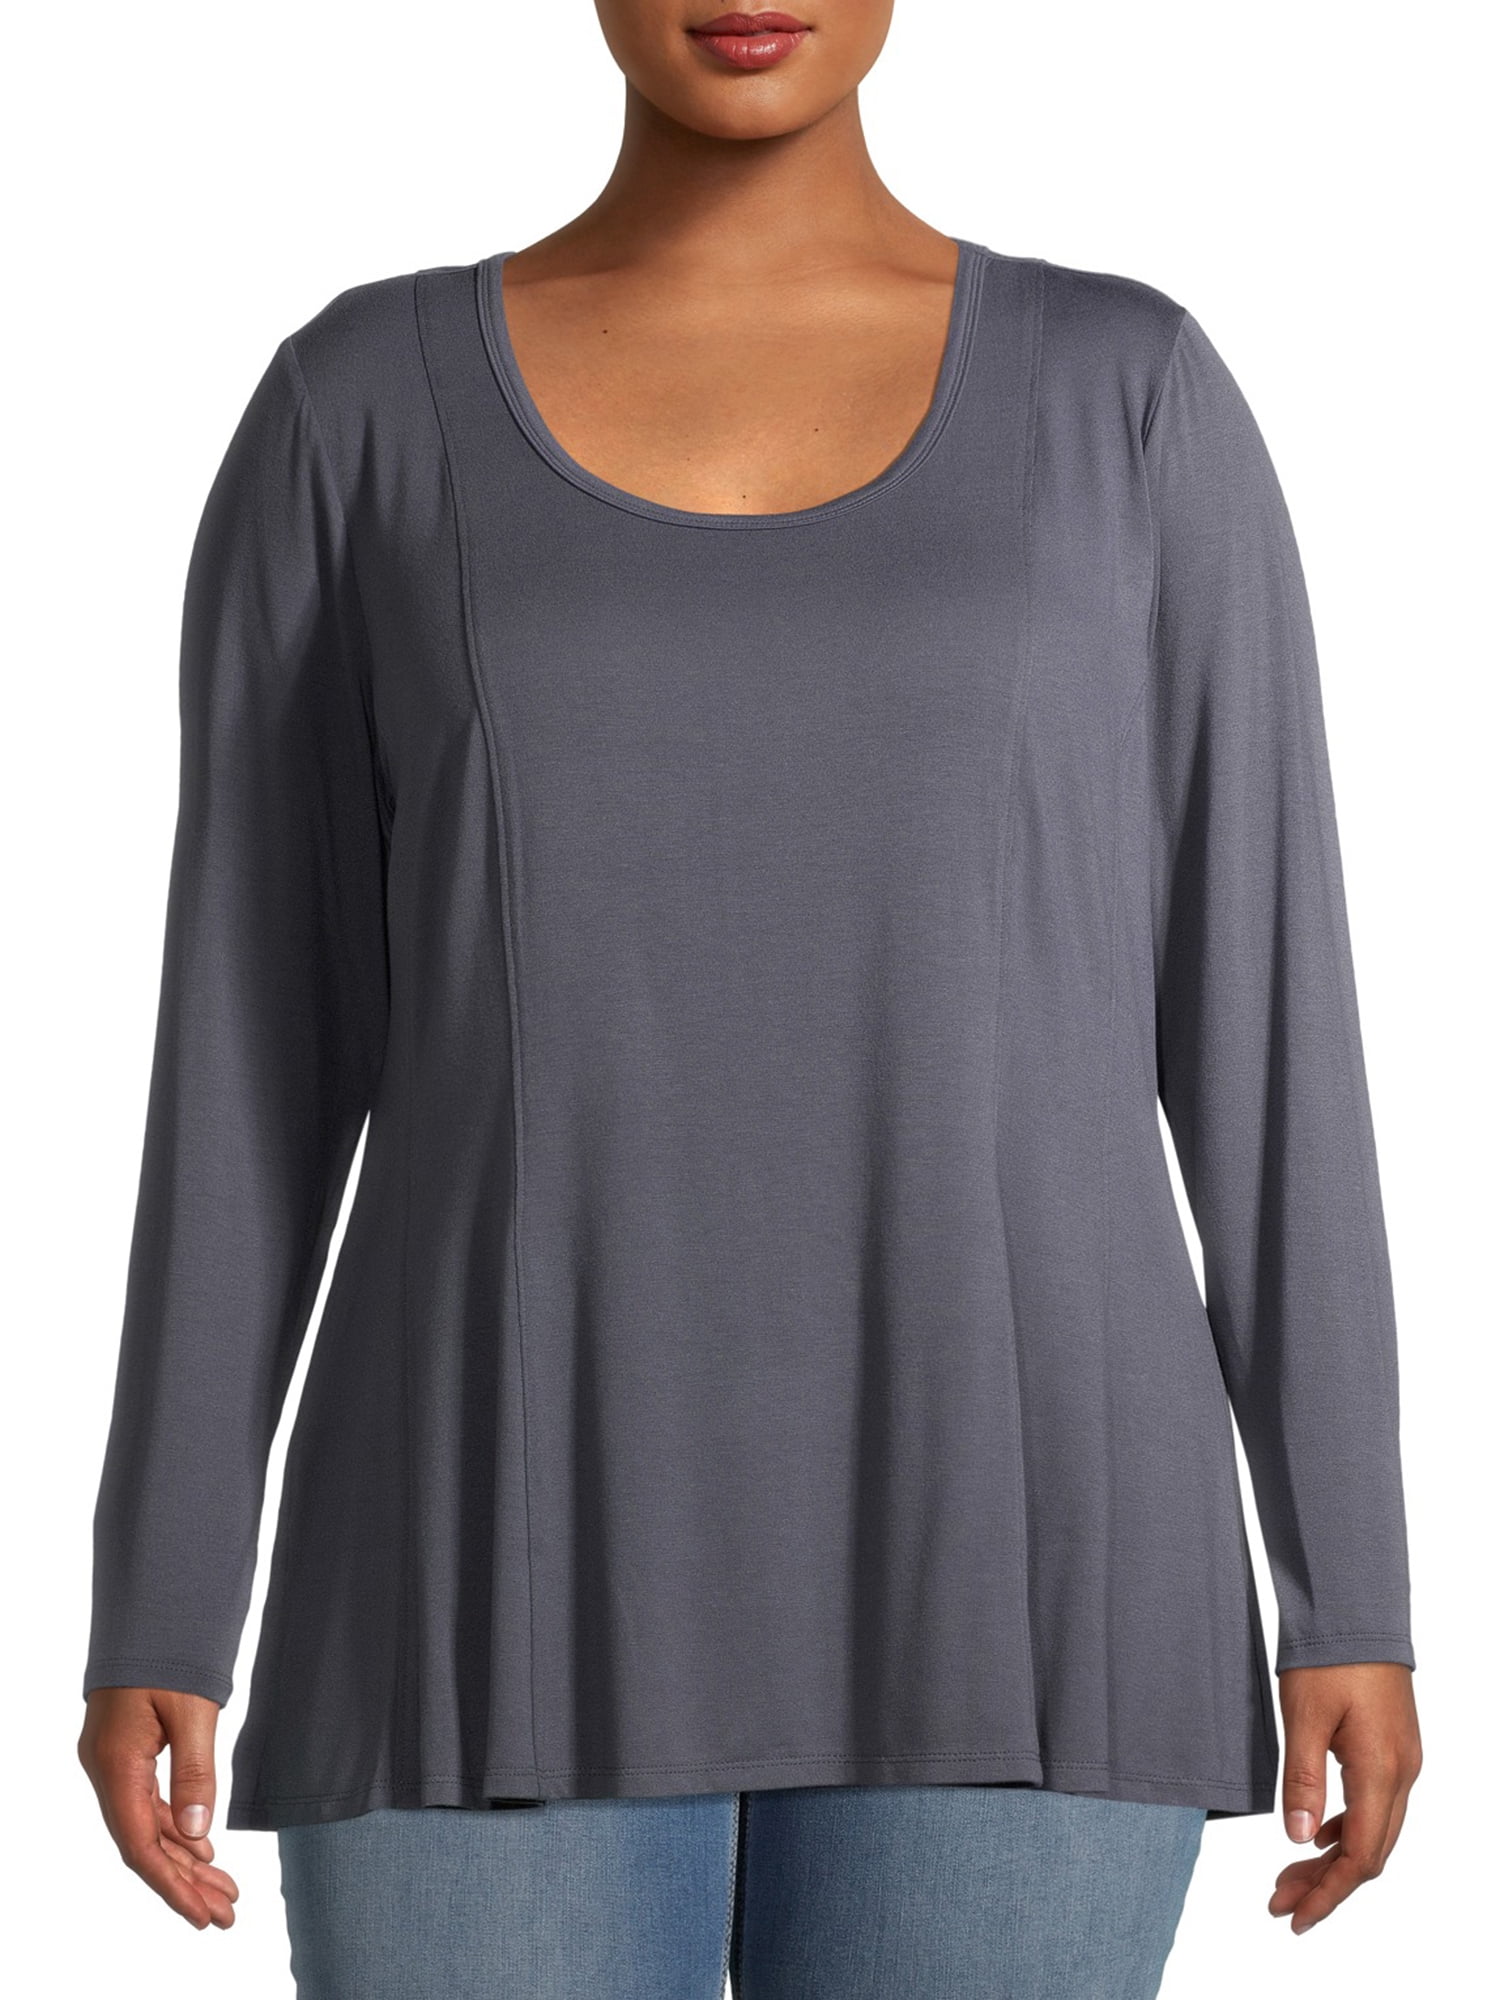 Terra & Sky Women's Plus Size Long Sleeve Swing T-Shirt - Walmart.com